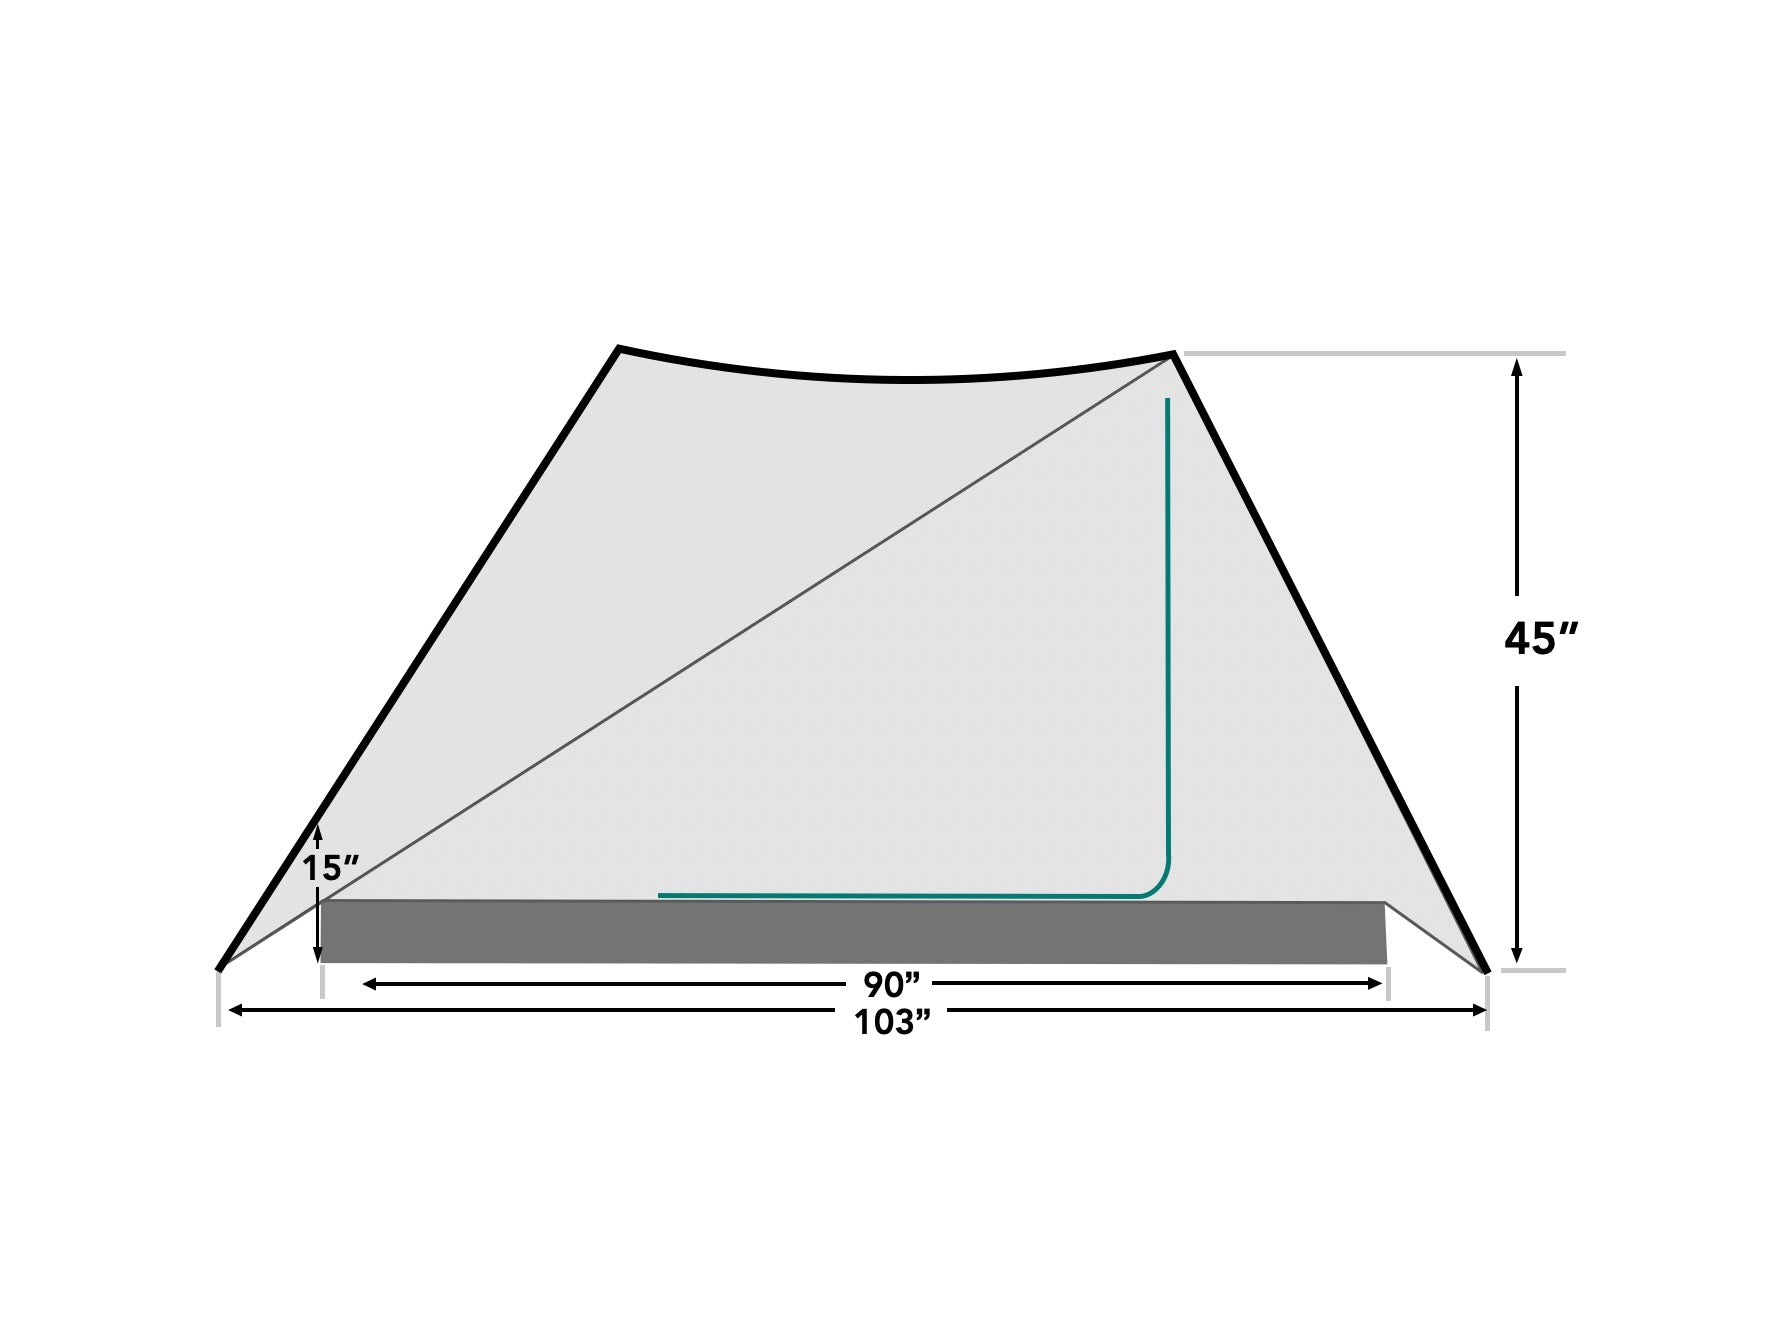 Durston X-Mid Pro Superlight Tent